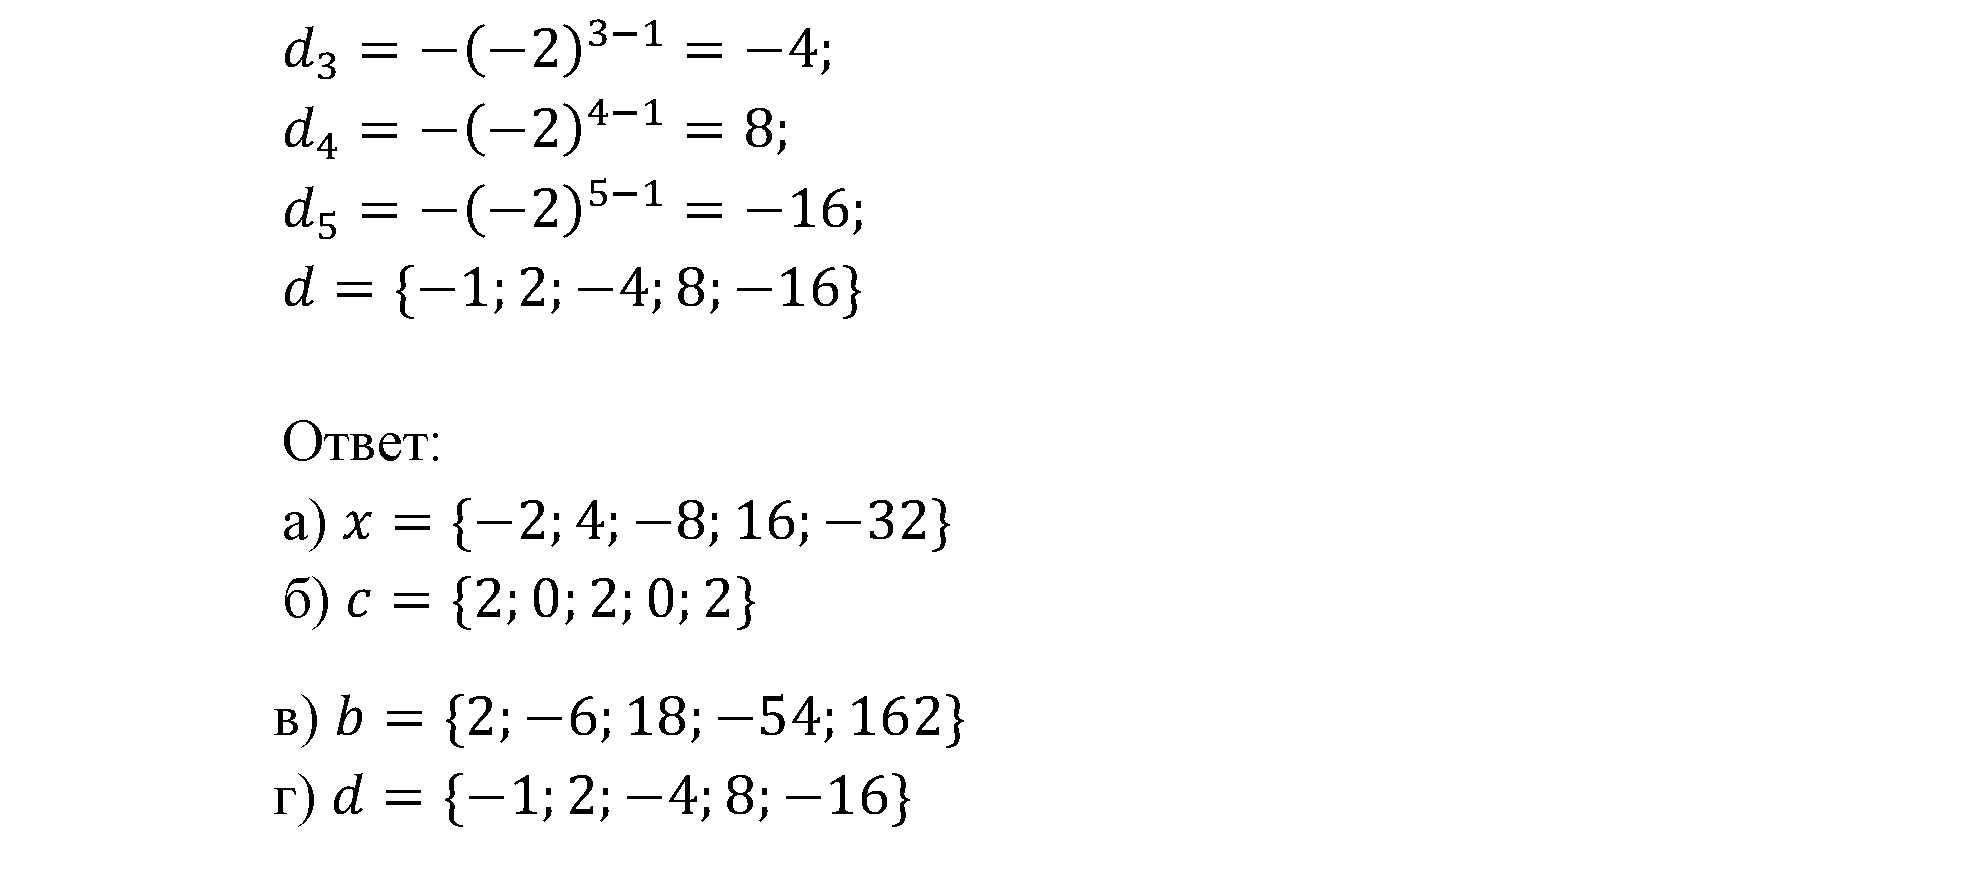 страница 96 задача 15.25 алгебра 9 класс Мордкович 2010 год